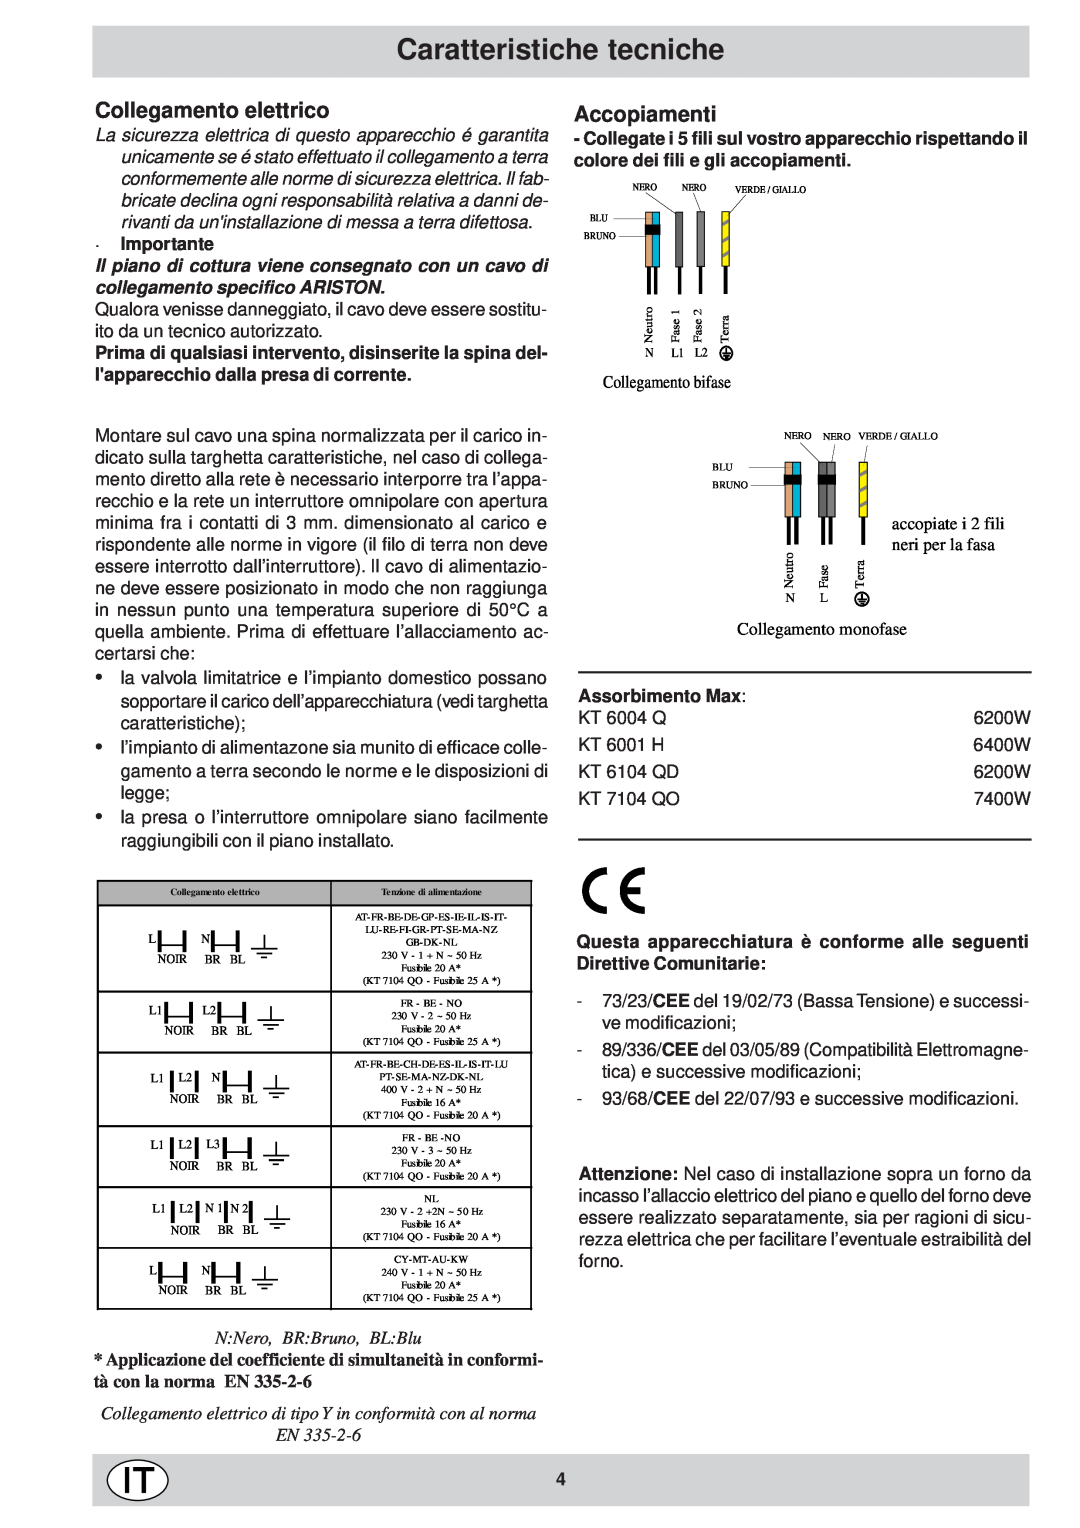 Ariston KT 8104 QO manual Caratteristiche tecniche, Collegamento elettrico, Accopiamenti, ·Importante, Assorbimento Max 